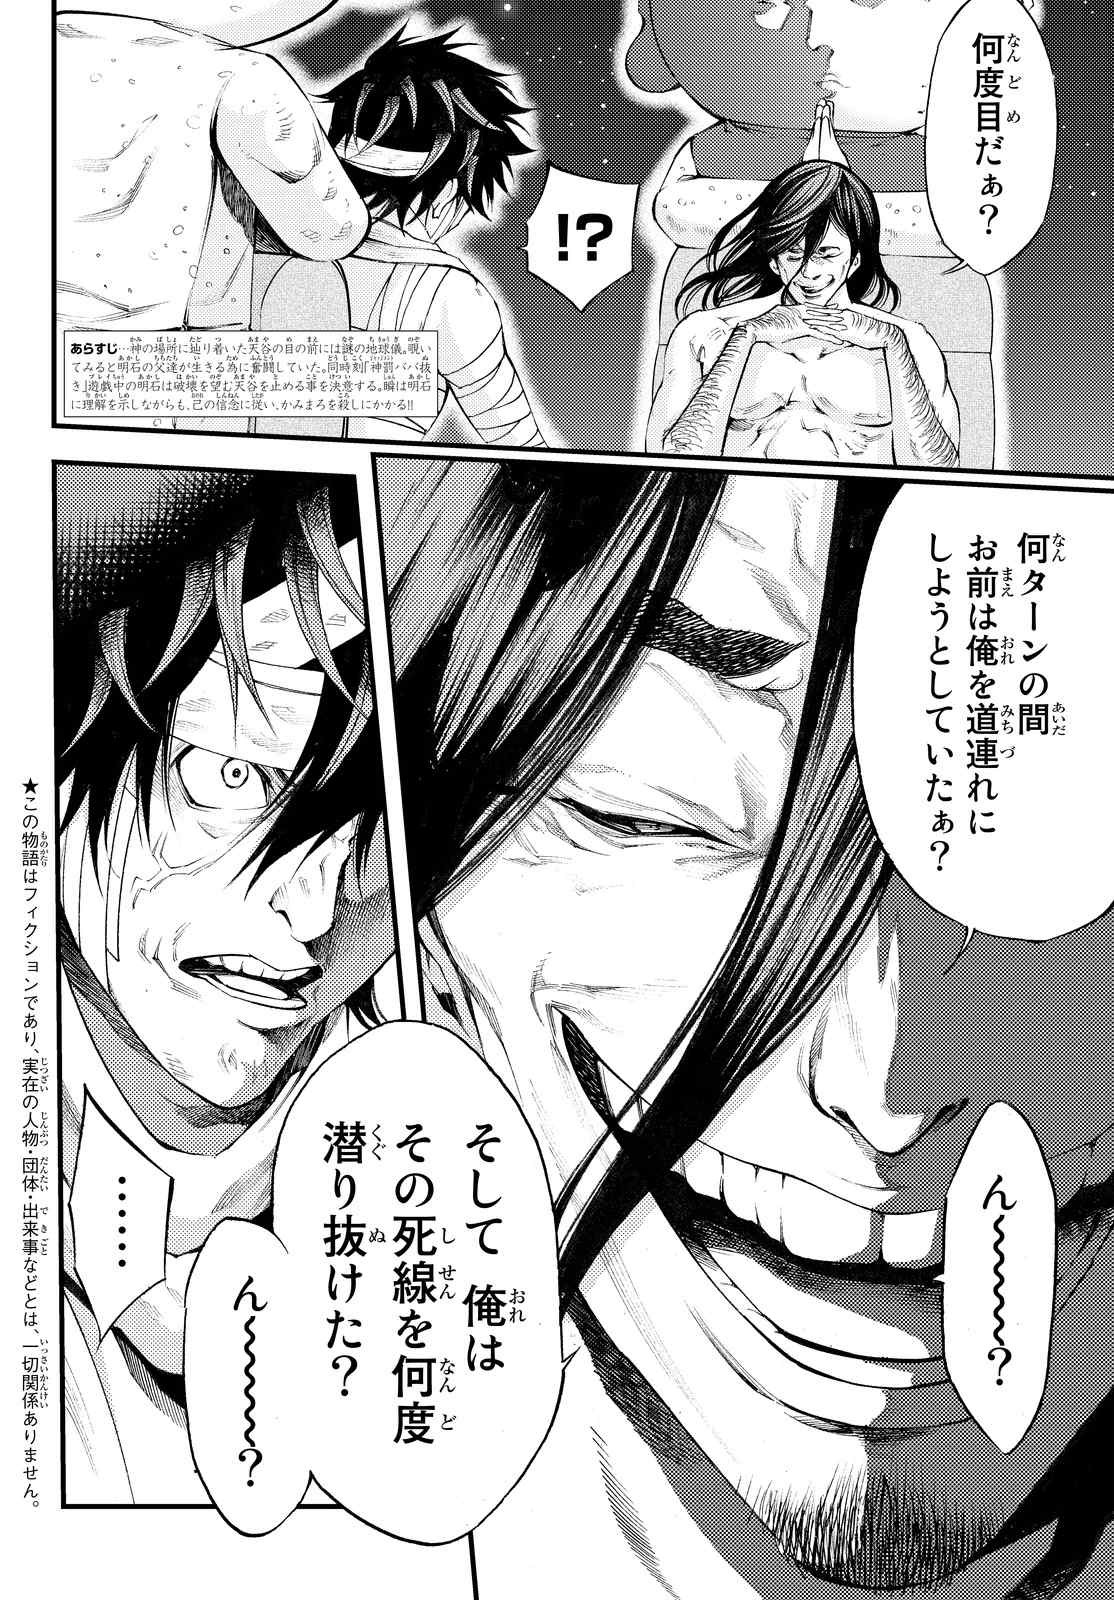 Kamisama_no_Ituori - Chapter 170 - Page 2